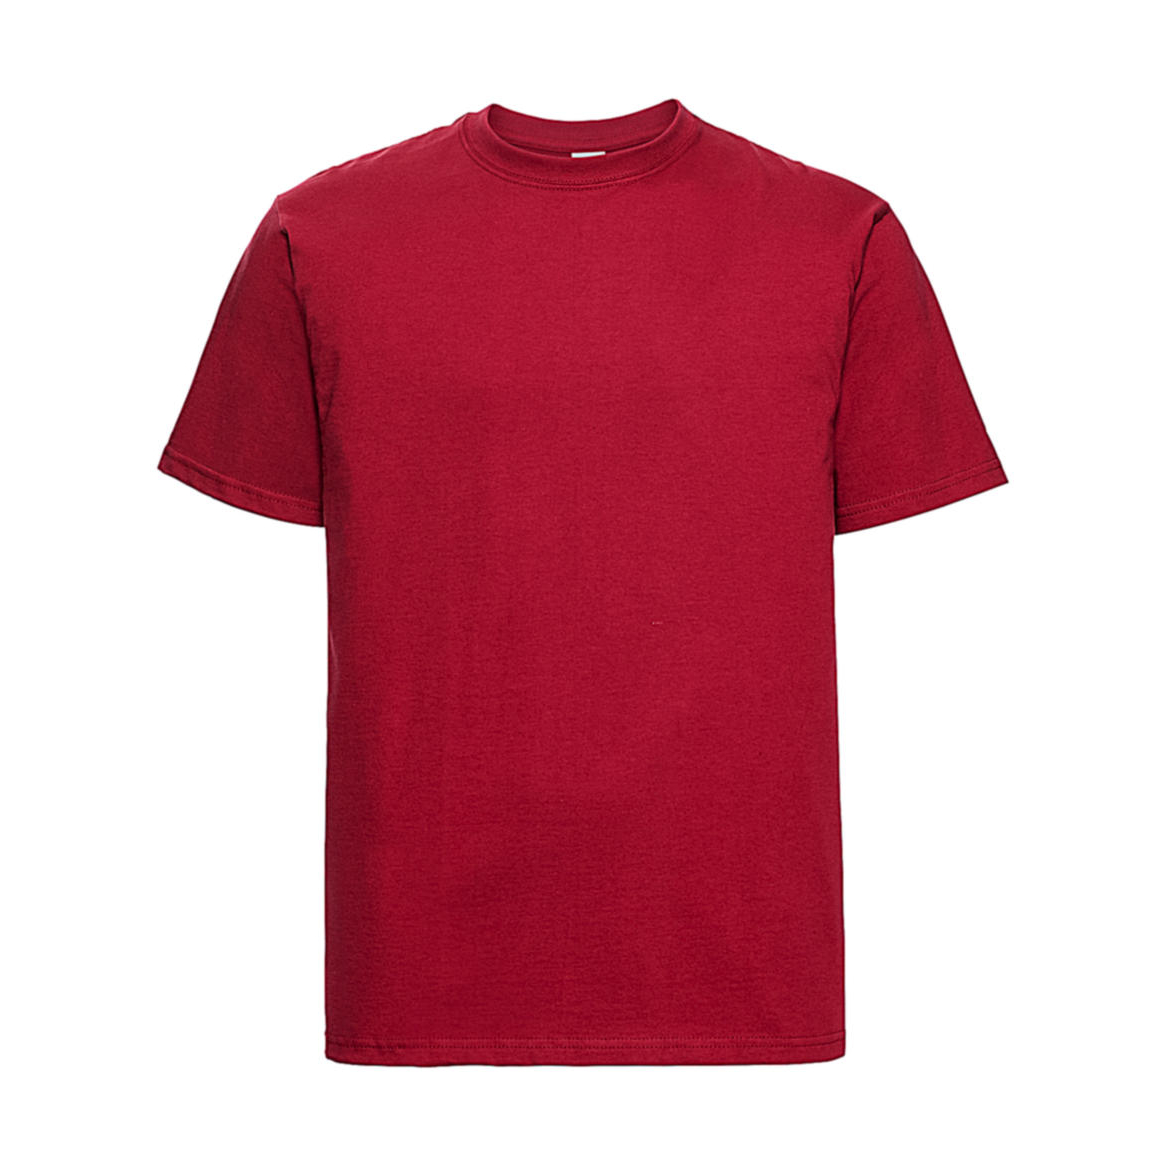 Pánské tričko Russell Heavyweight T - červené, XL